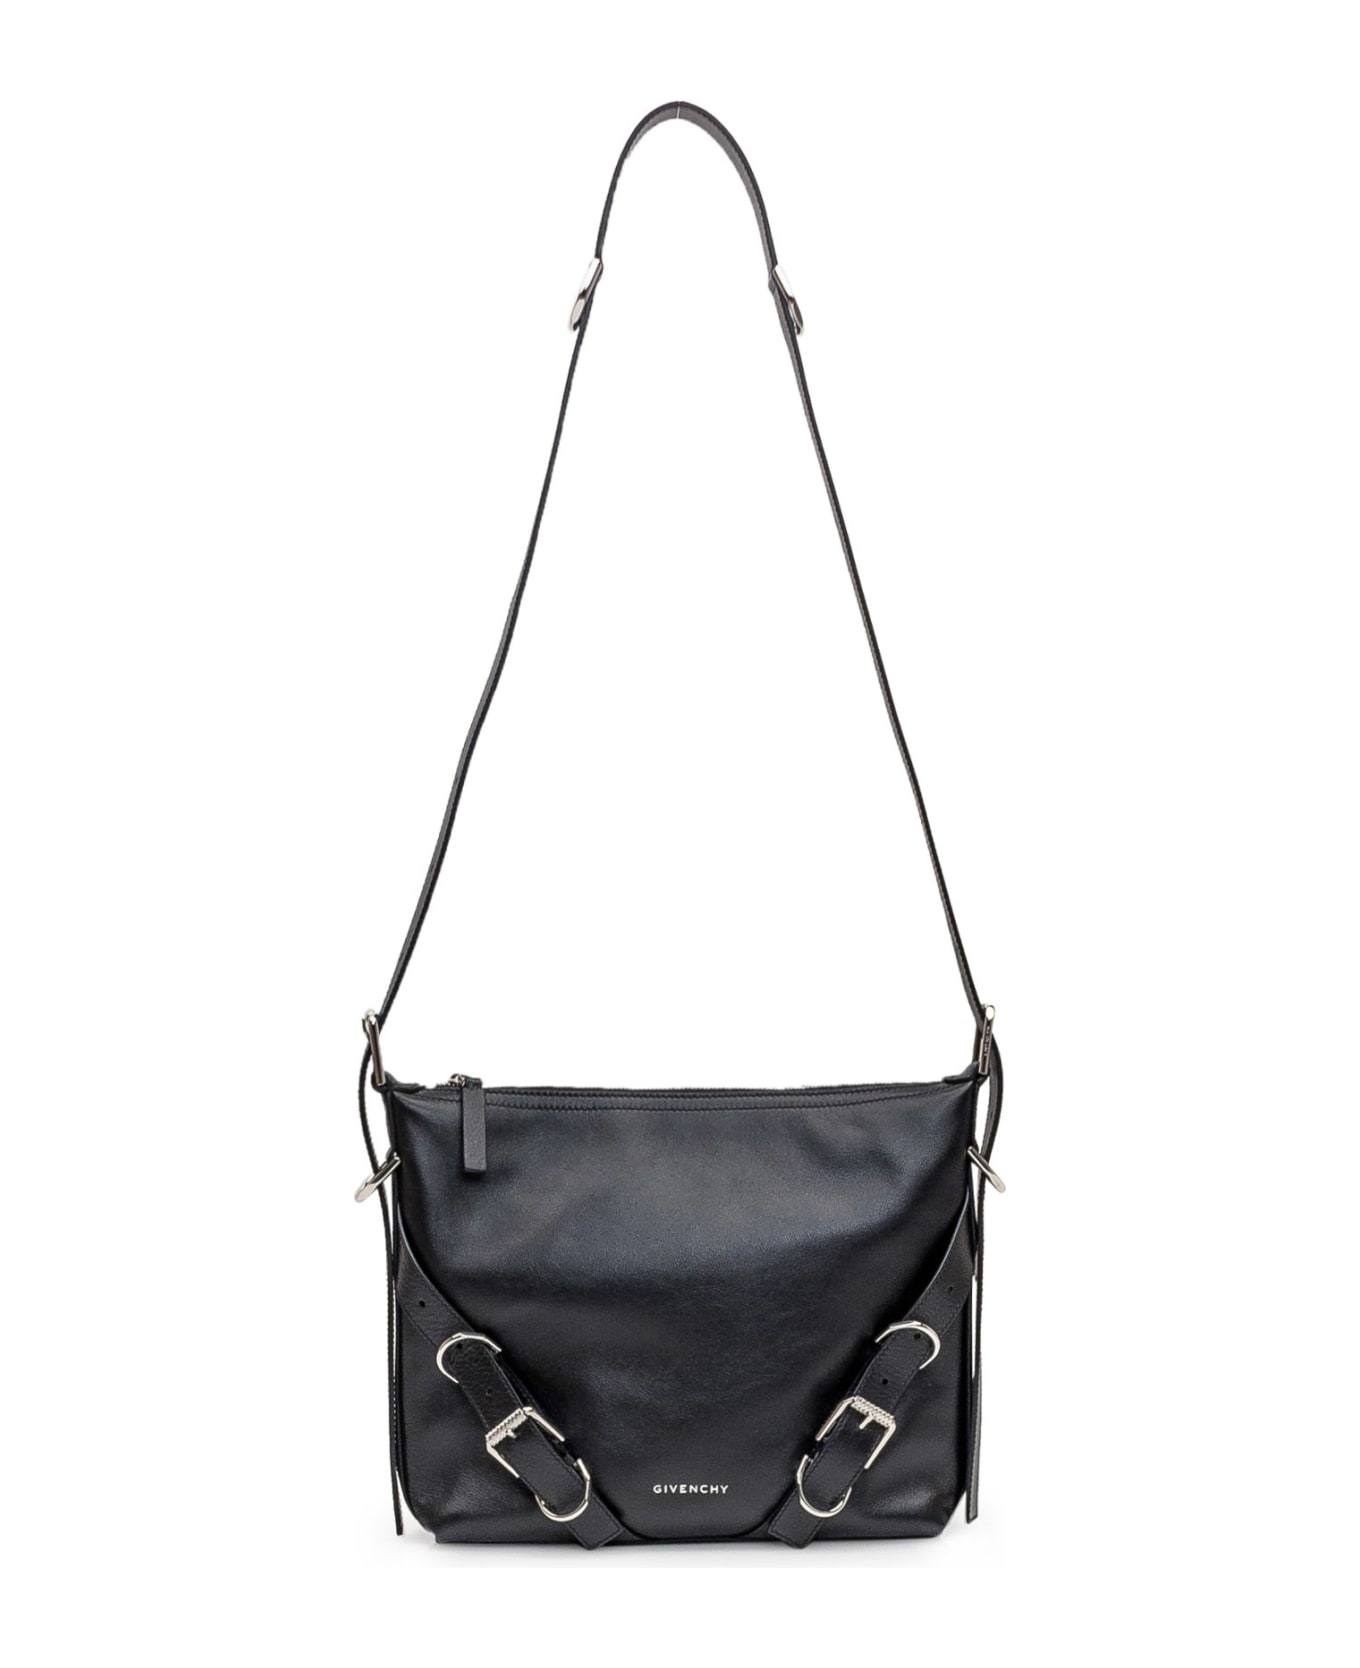 Givenchy Voyou Crossbody Bag - black ショルダーバッグ